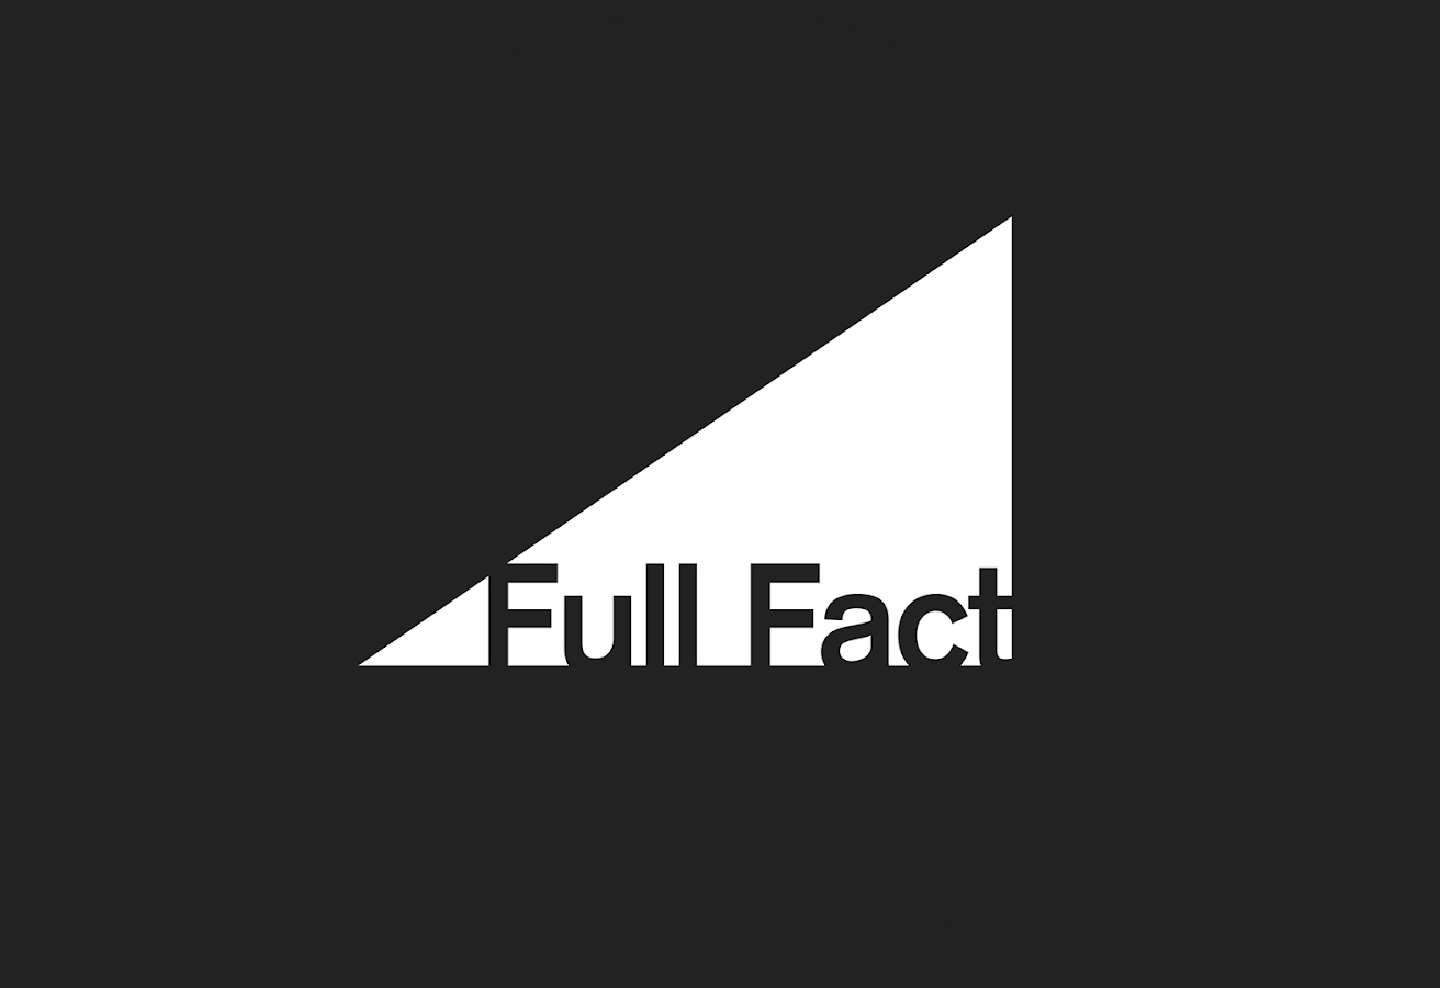 Full Fact logo